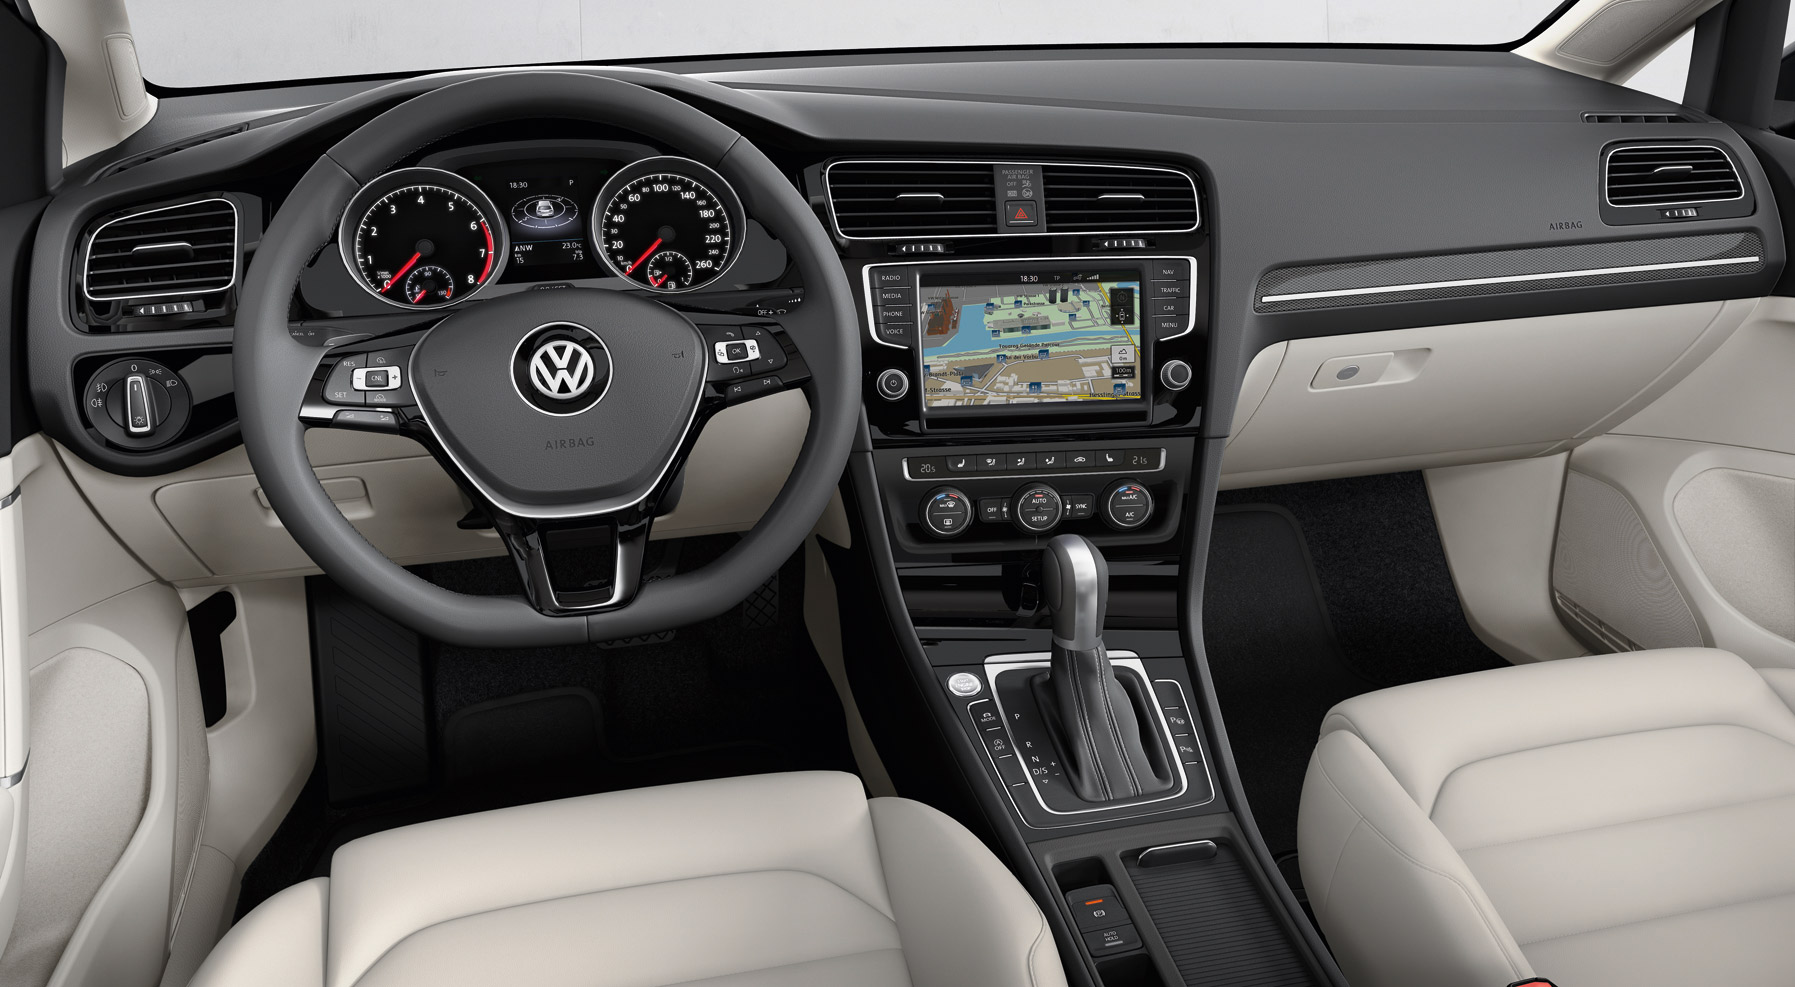 Volkswagen Golf 7 séptima generación interior